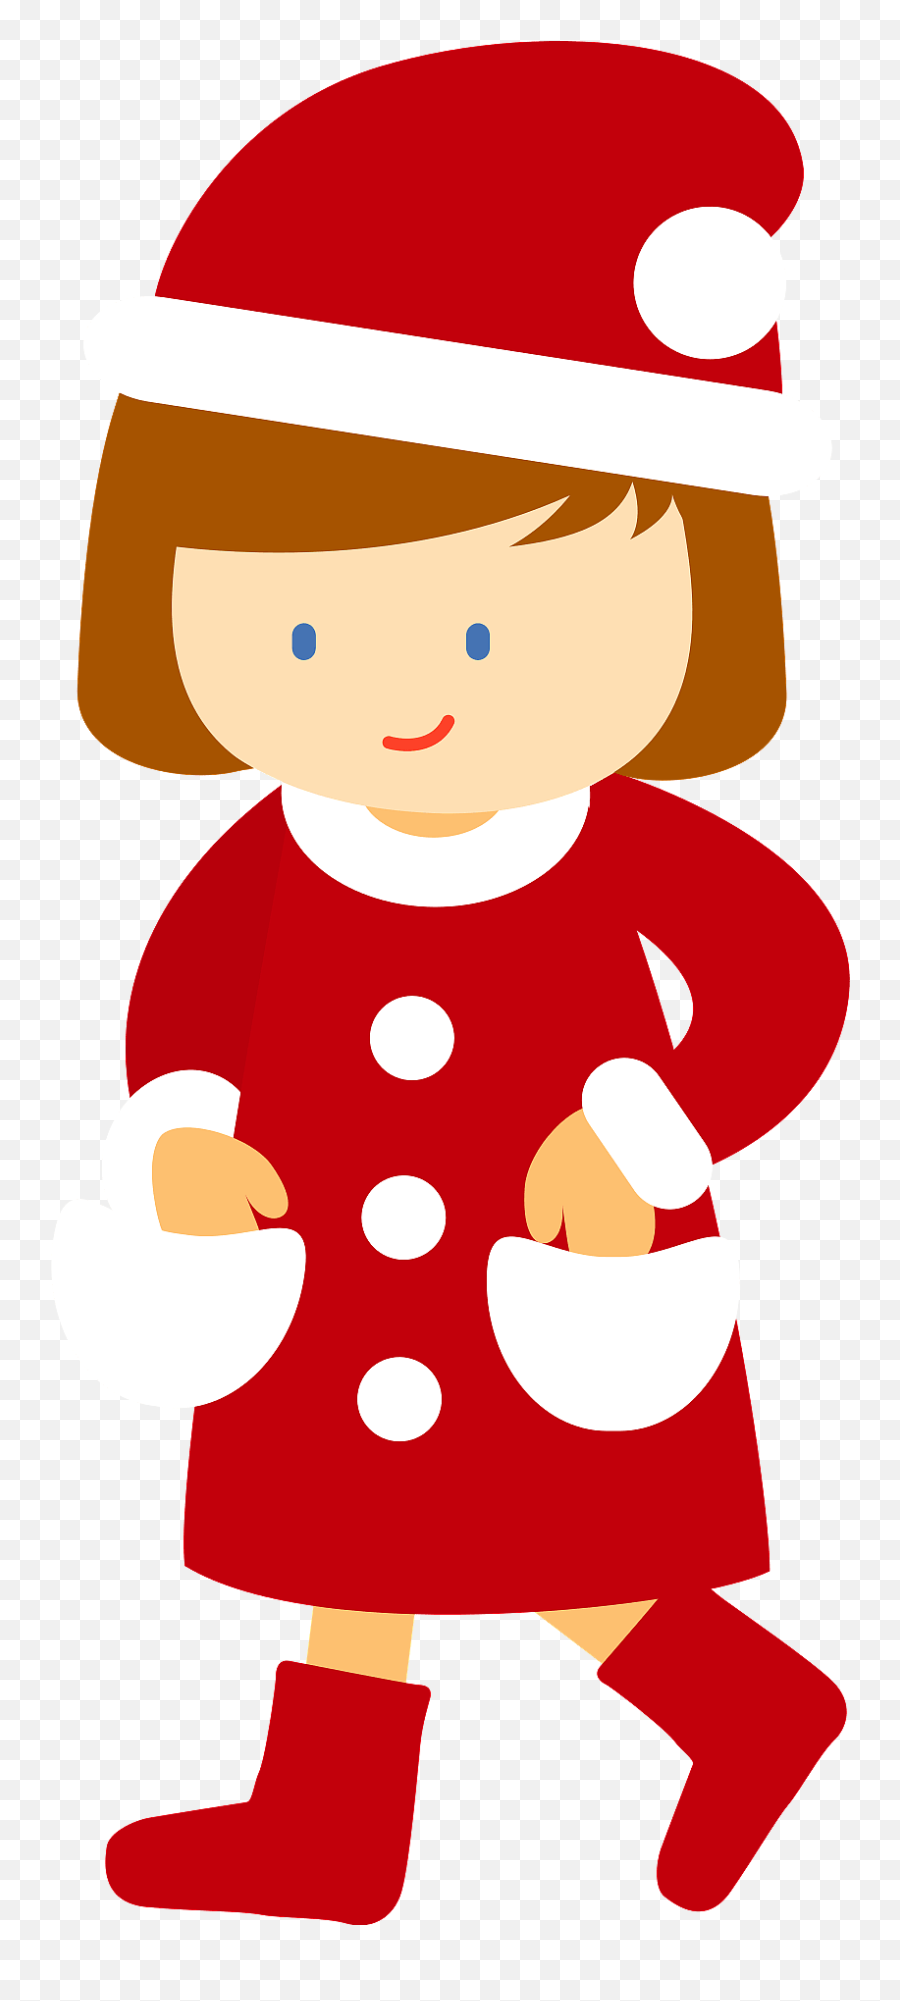 Girl In Santa Claus Costume Clipart - Santa Girl Costume Clipart Emoji,Costume Clipart